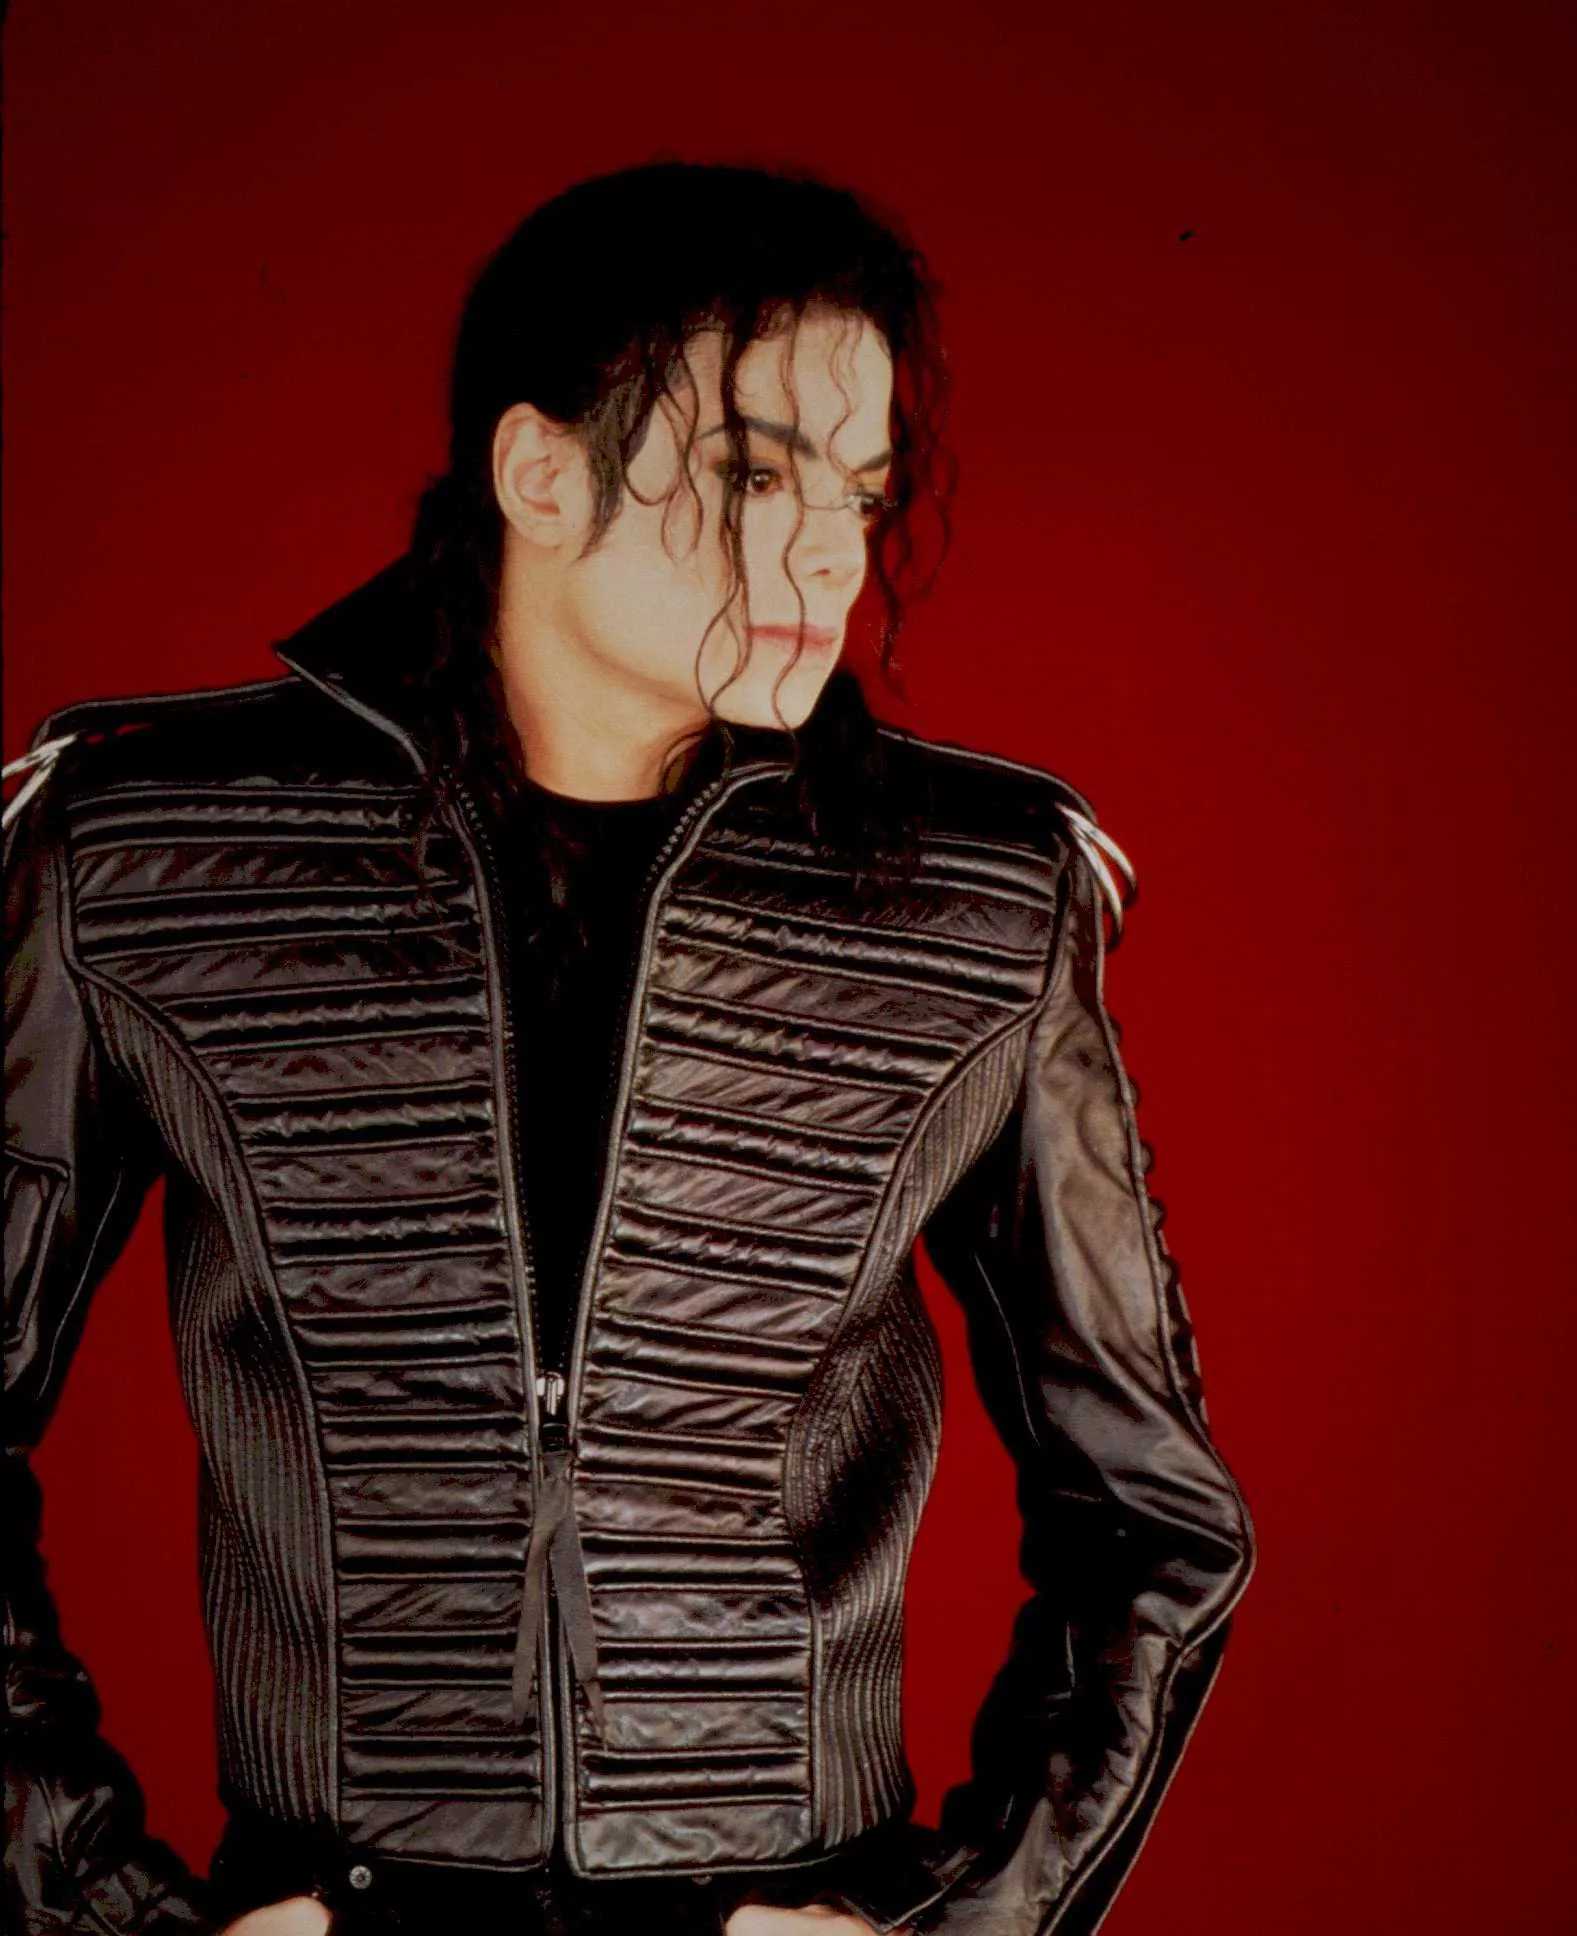 Michael Jackson indspillede generalprøve